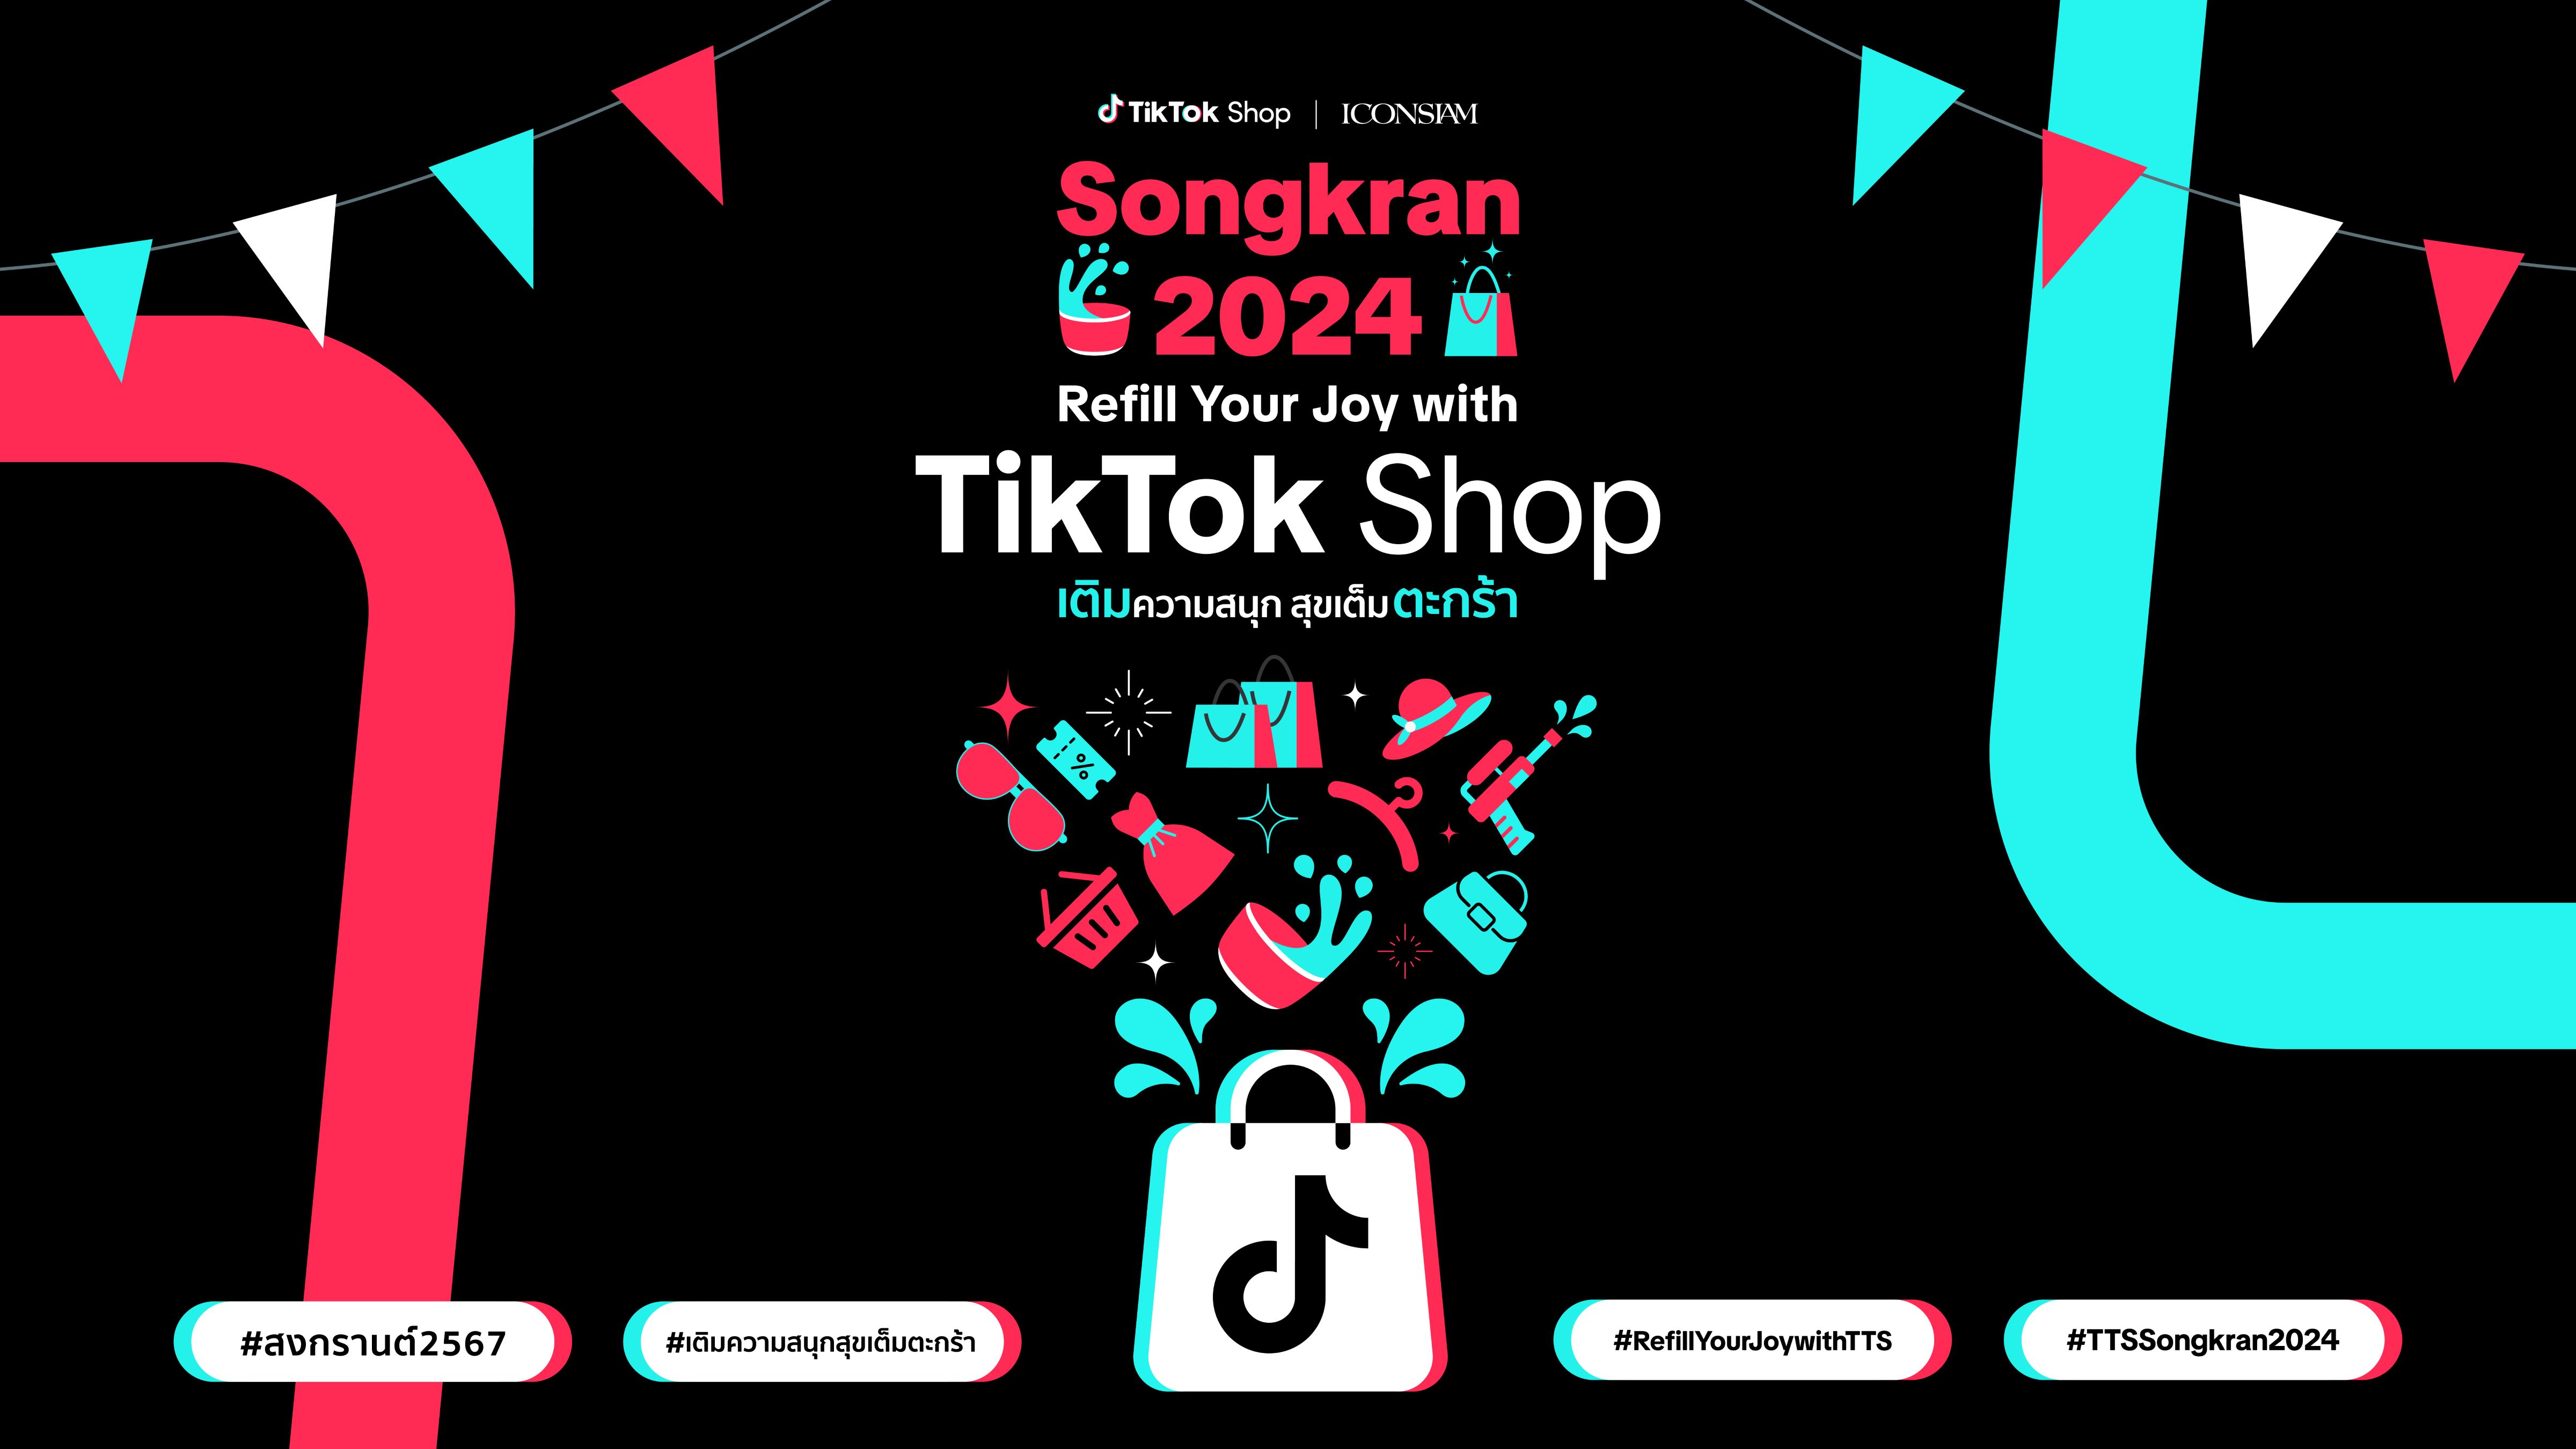 TikTok Shop หนุนซอฟต์พาวเวอร์ไทย โปรโมทสินค้าไทย จัดใหญ่ร่วมฉลอง Songkran 2024 